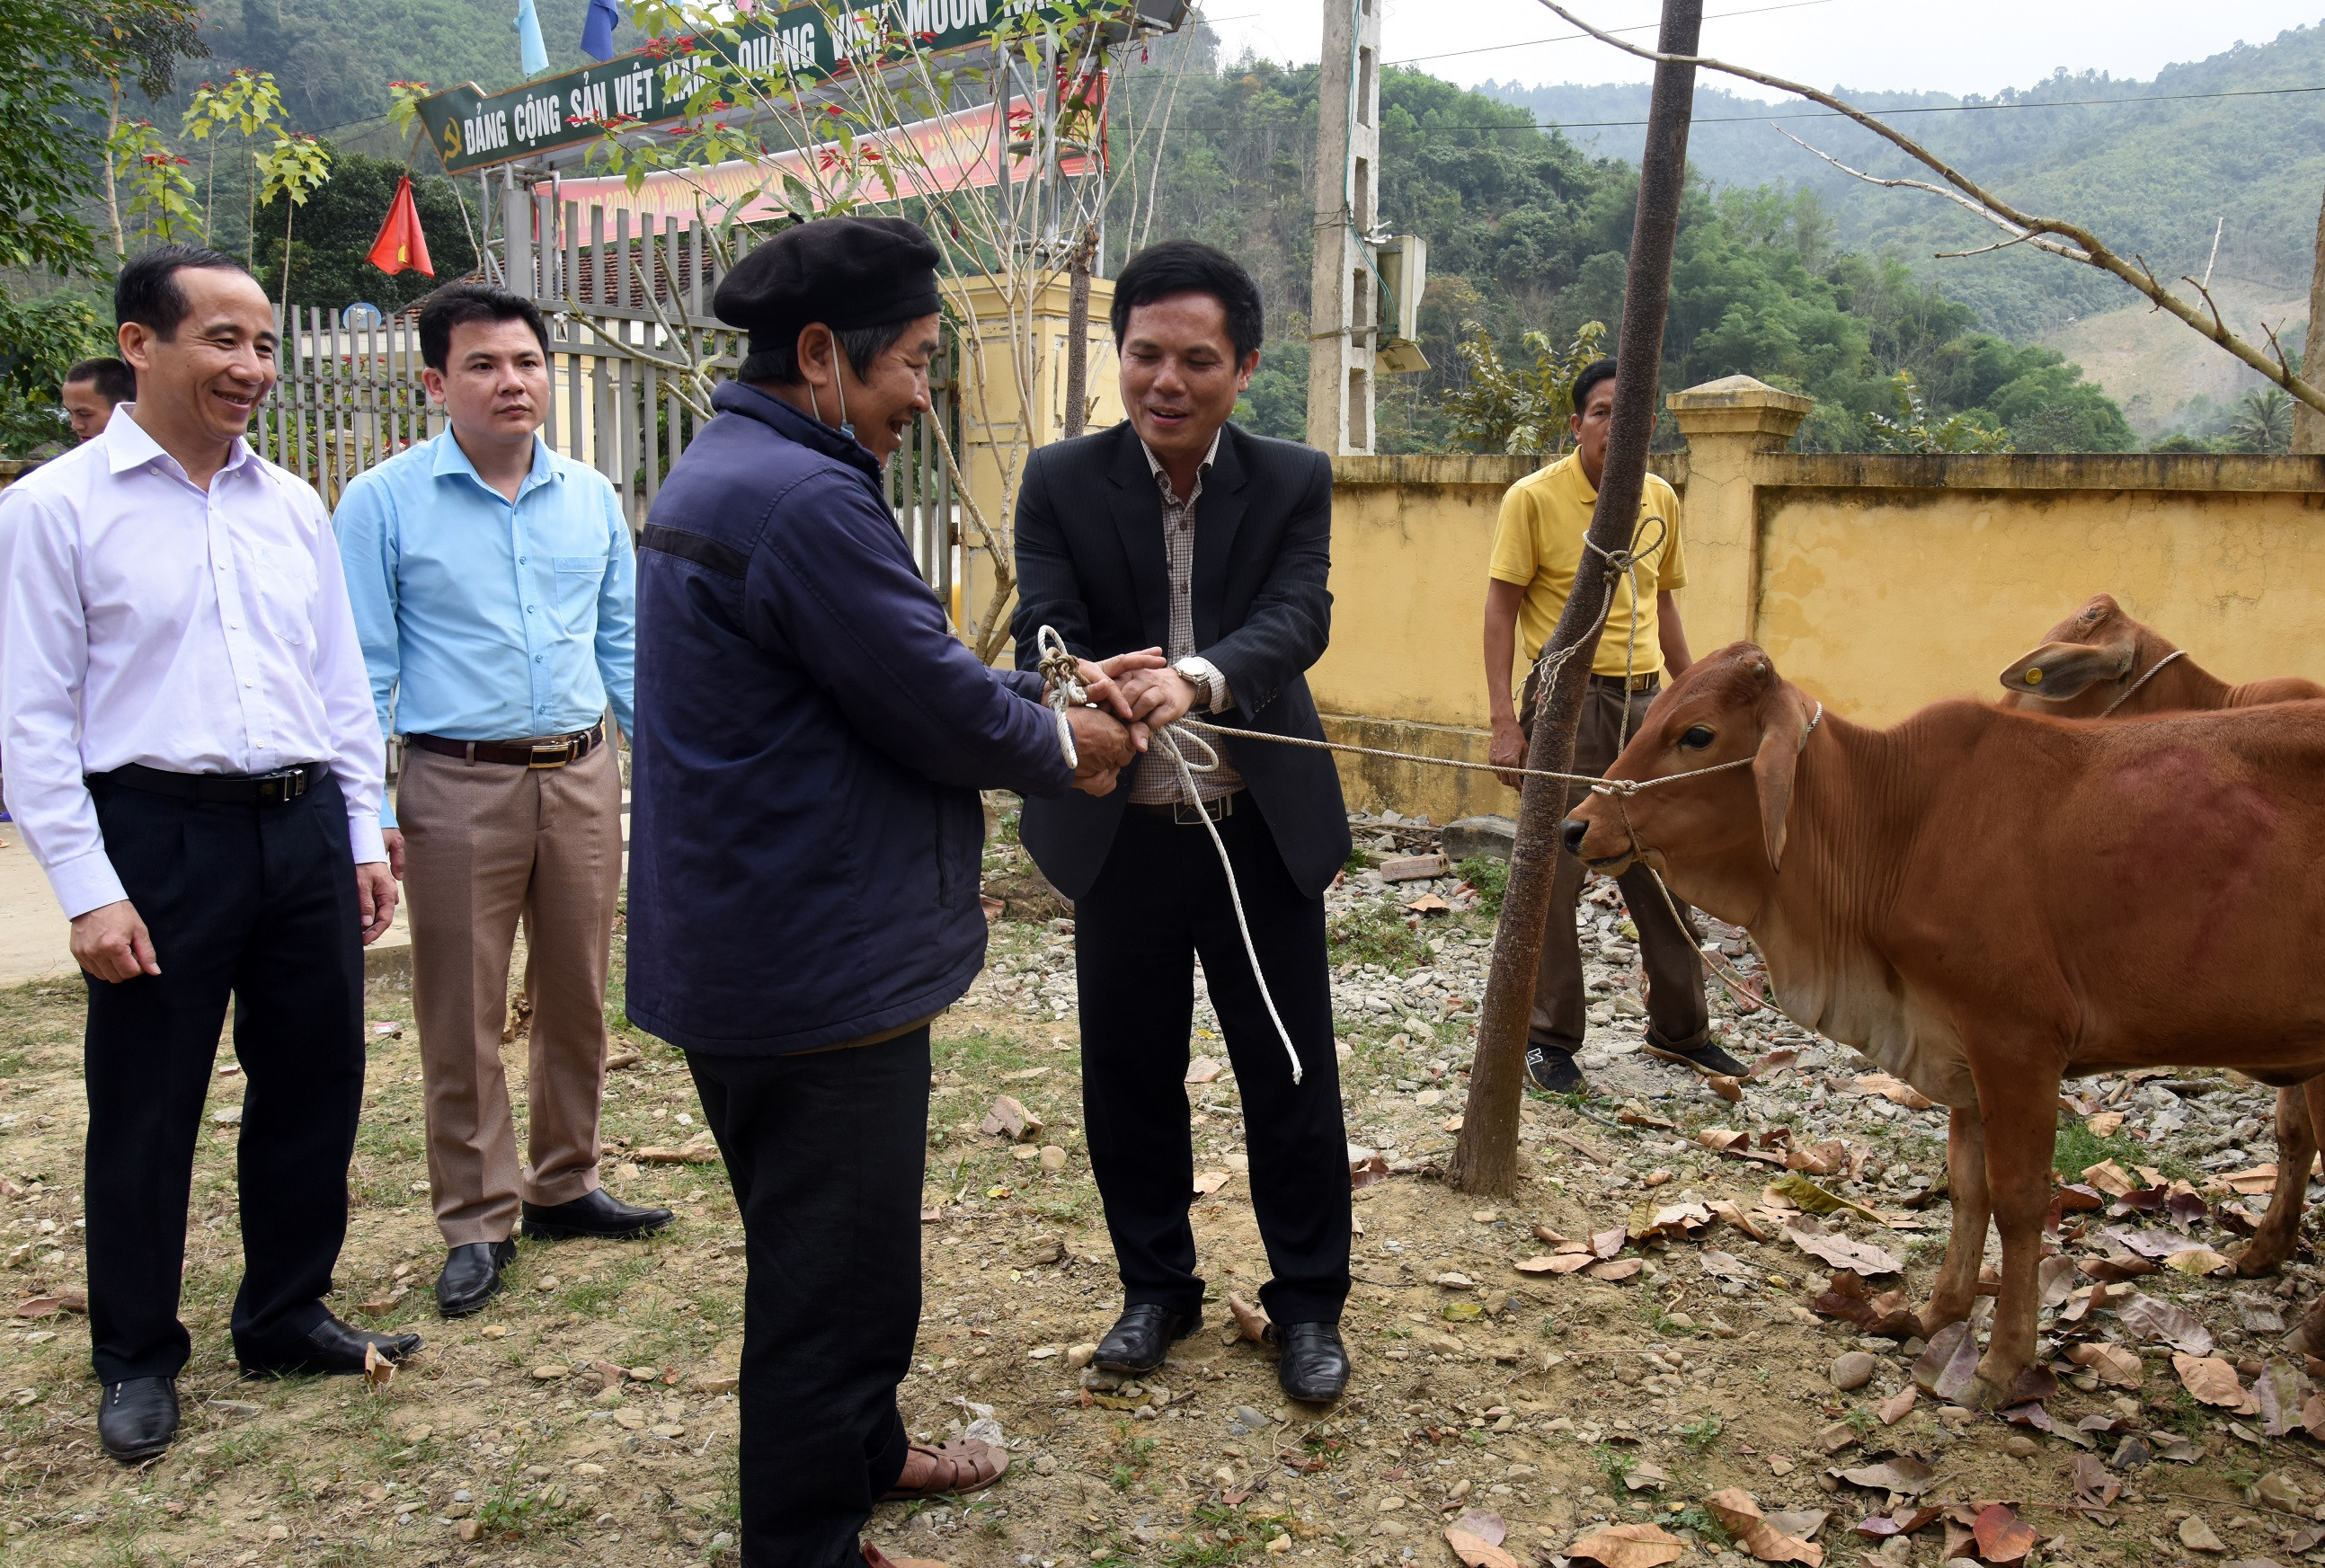 Tặng bò giống giúp 15 hộ nghèo tại xã phát triển kinh tế. Ảnh: Thanh Sơn